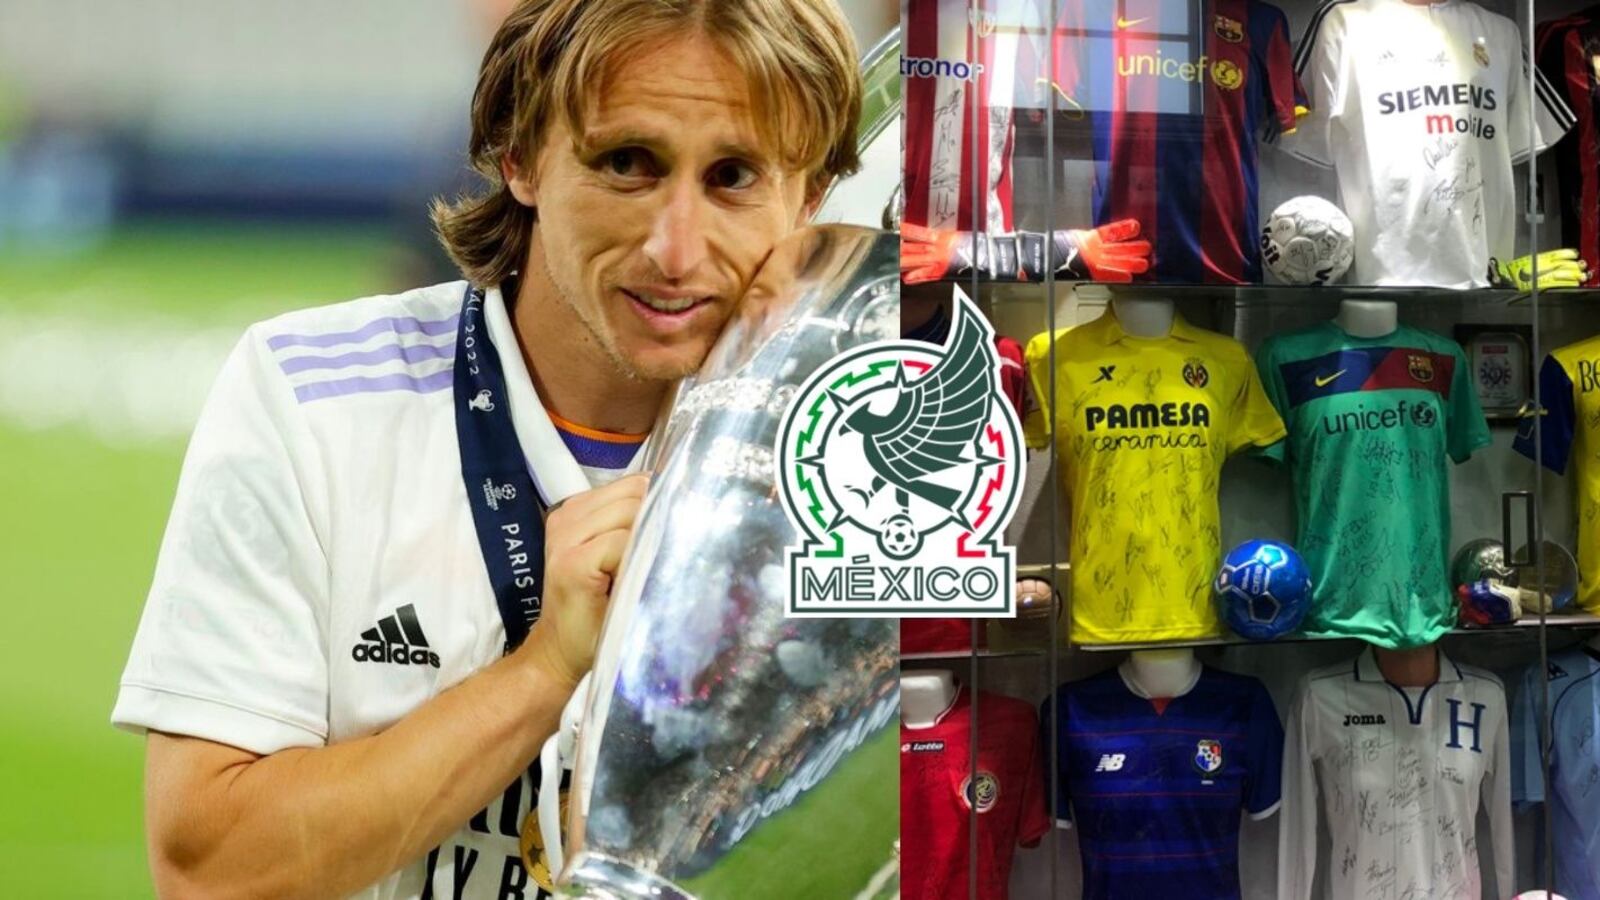 El único jugador mexicano que vale la pena para Modric, hasta tiene su jersey